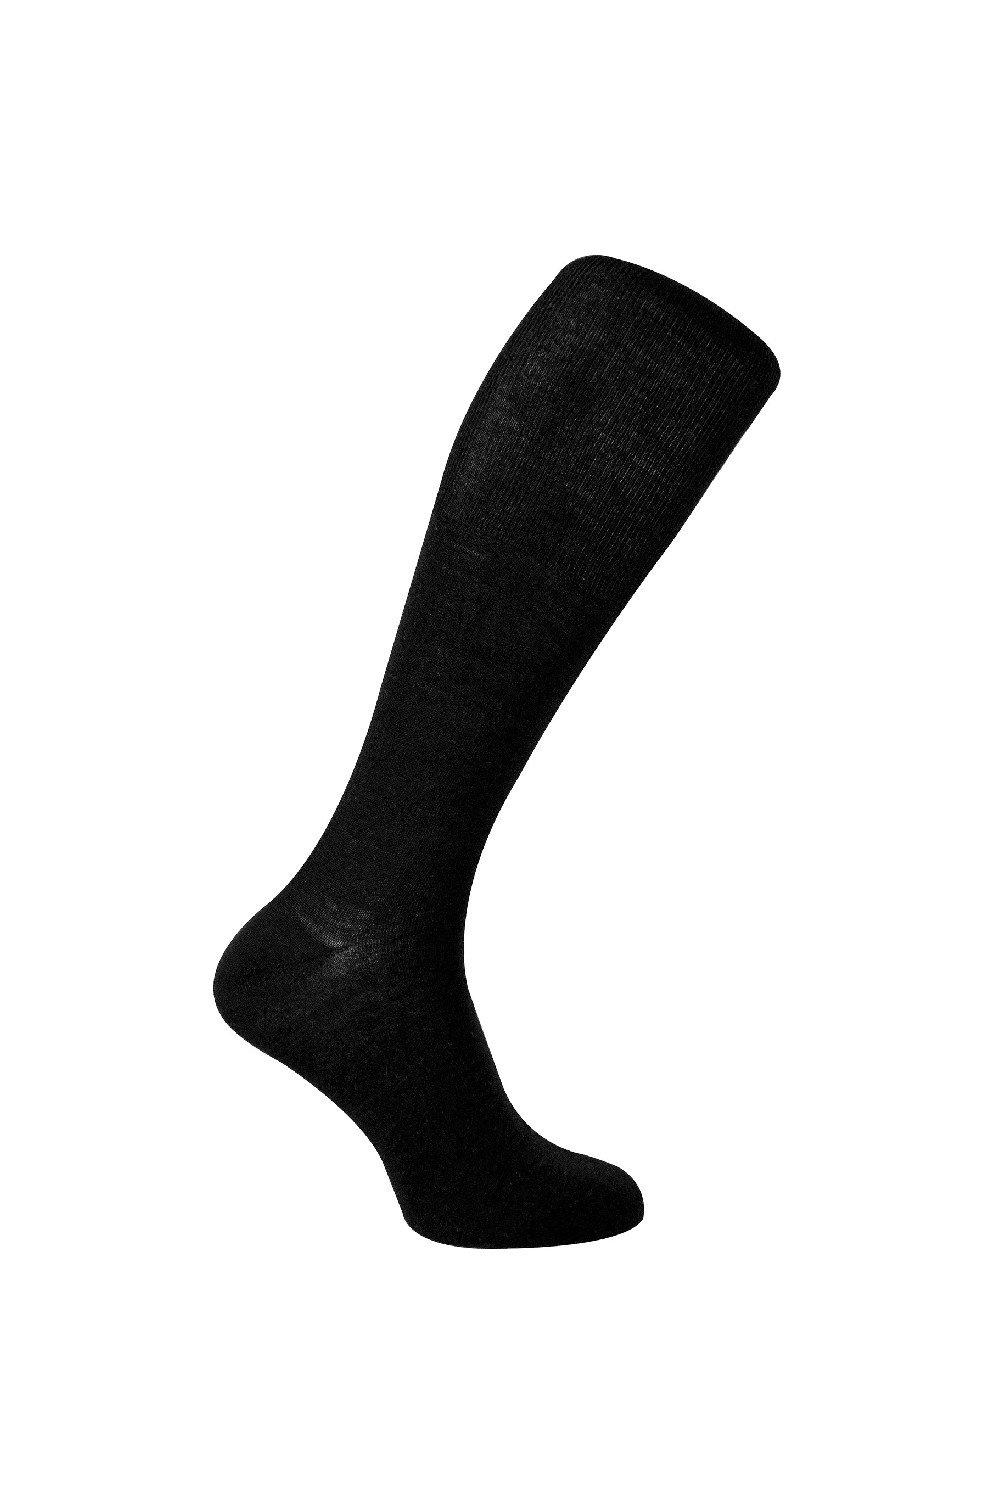 Knee High Winter Long Length Boot Merino Wool Socks